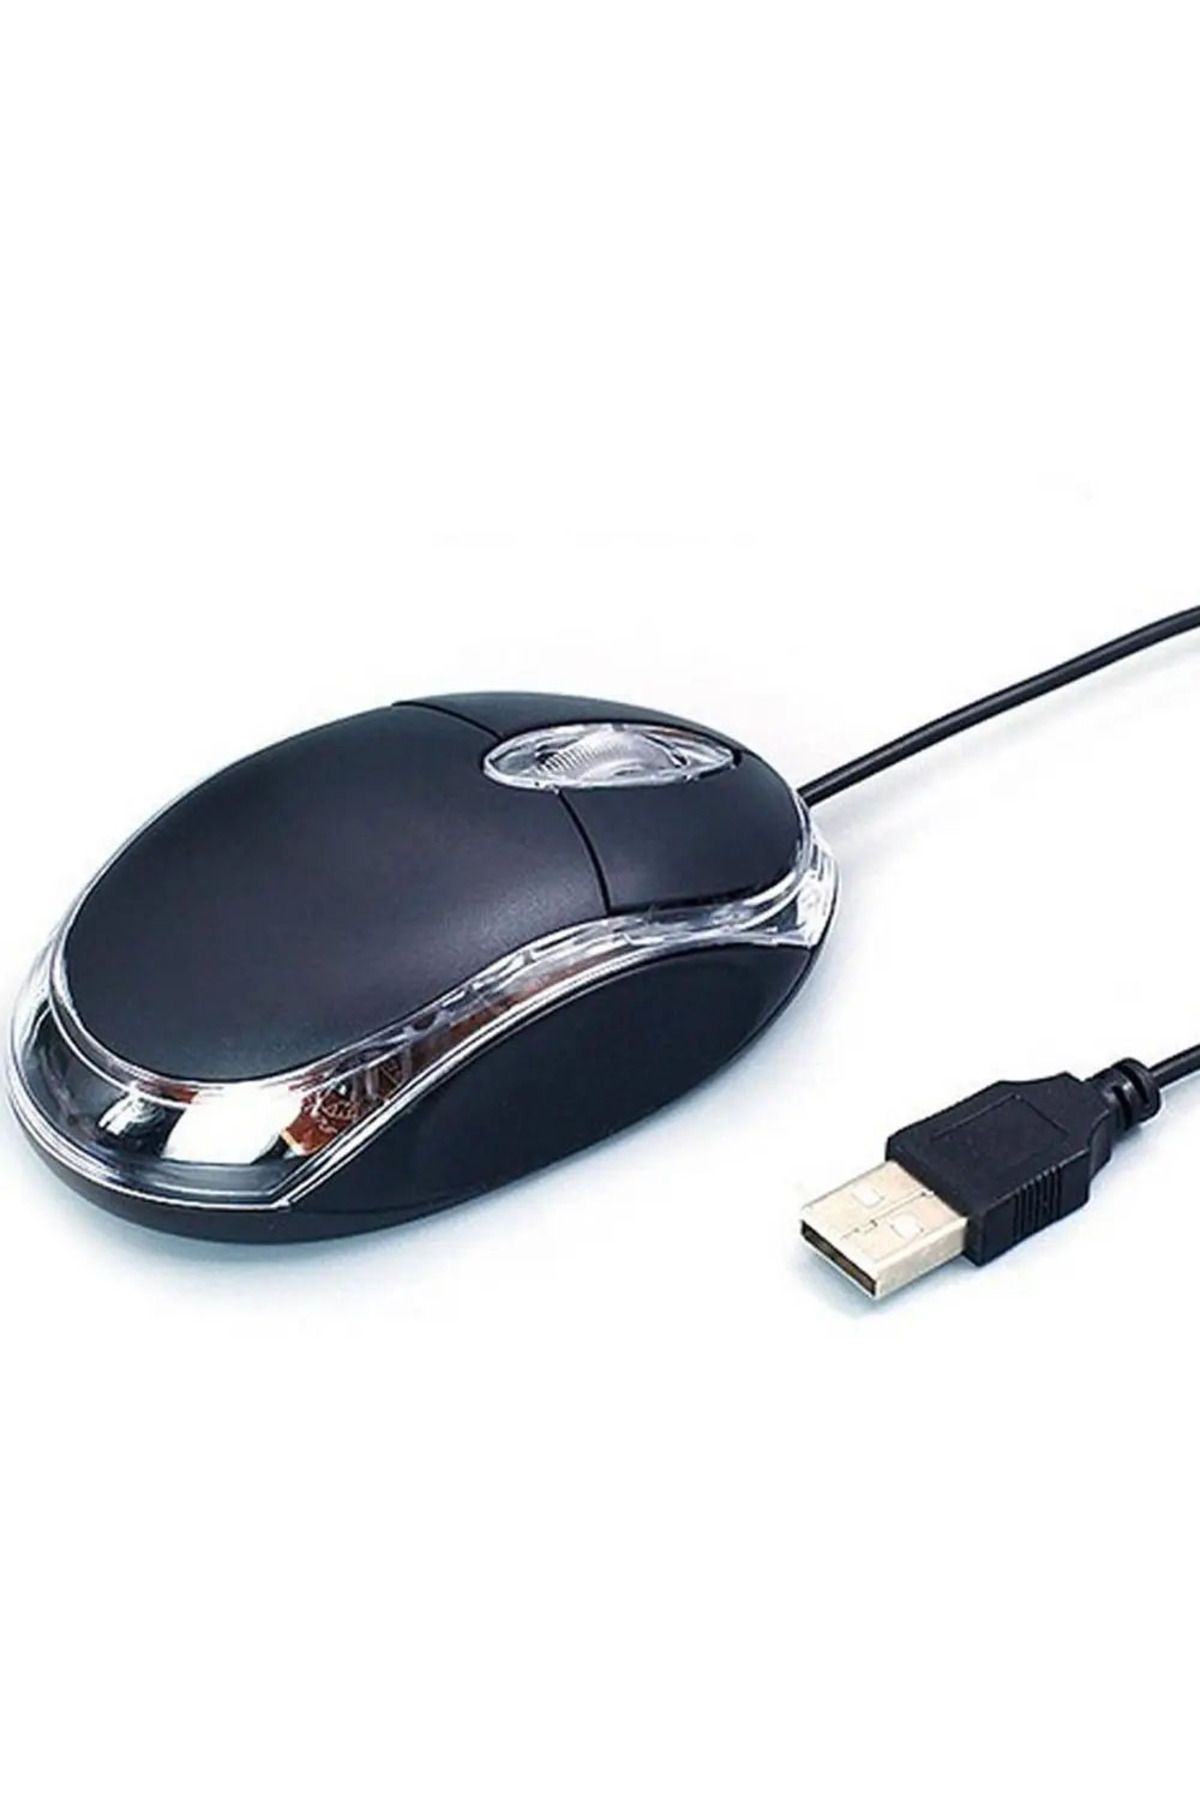 enfein USB Girişli Fare Ergonomik Kablolu 1200 DPI Işıklı Optik Mouse Siyah